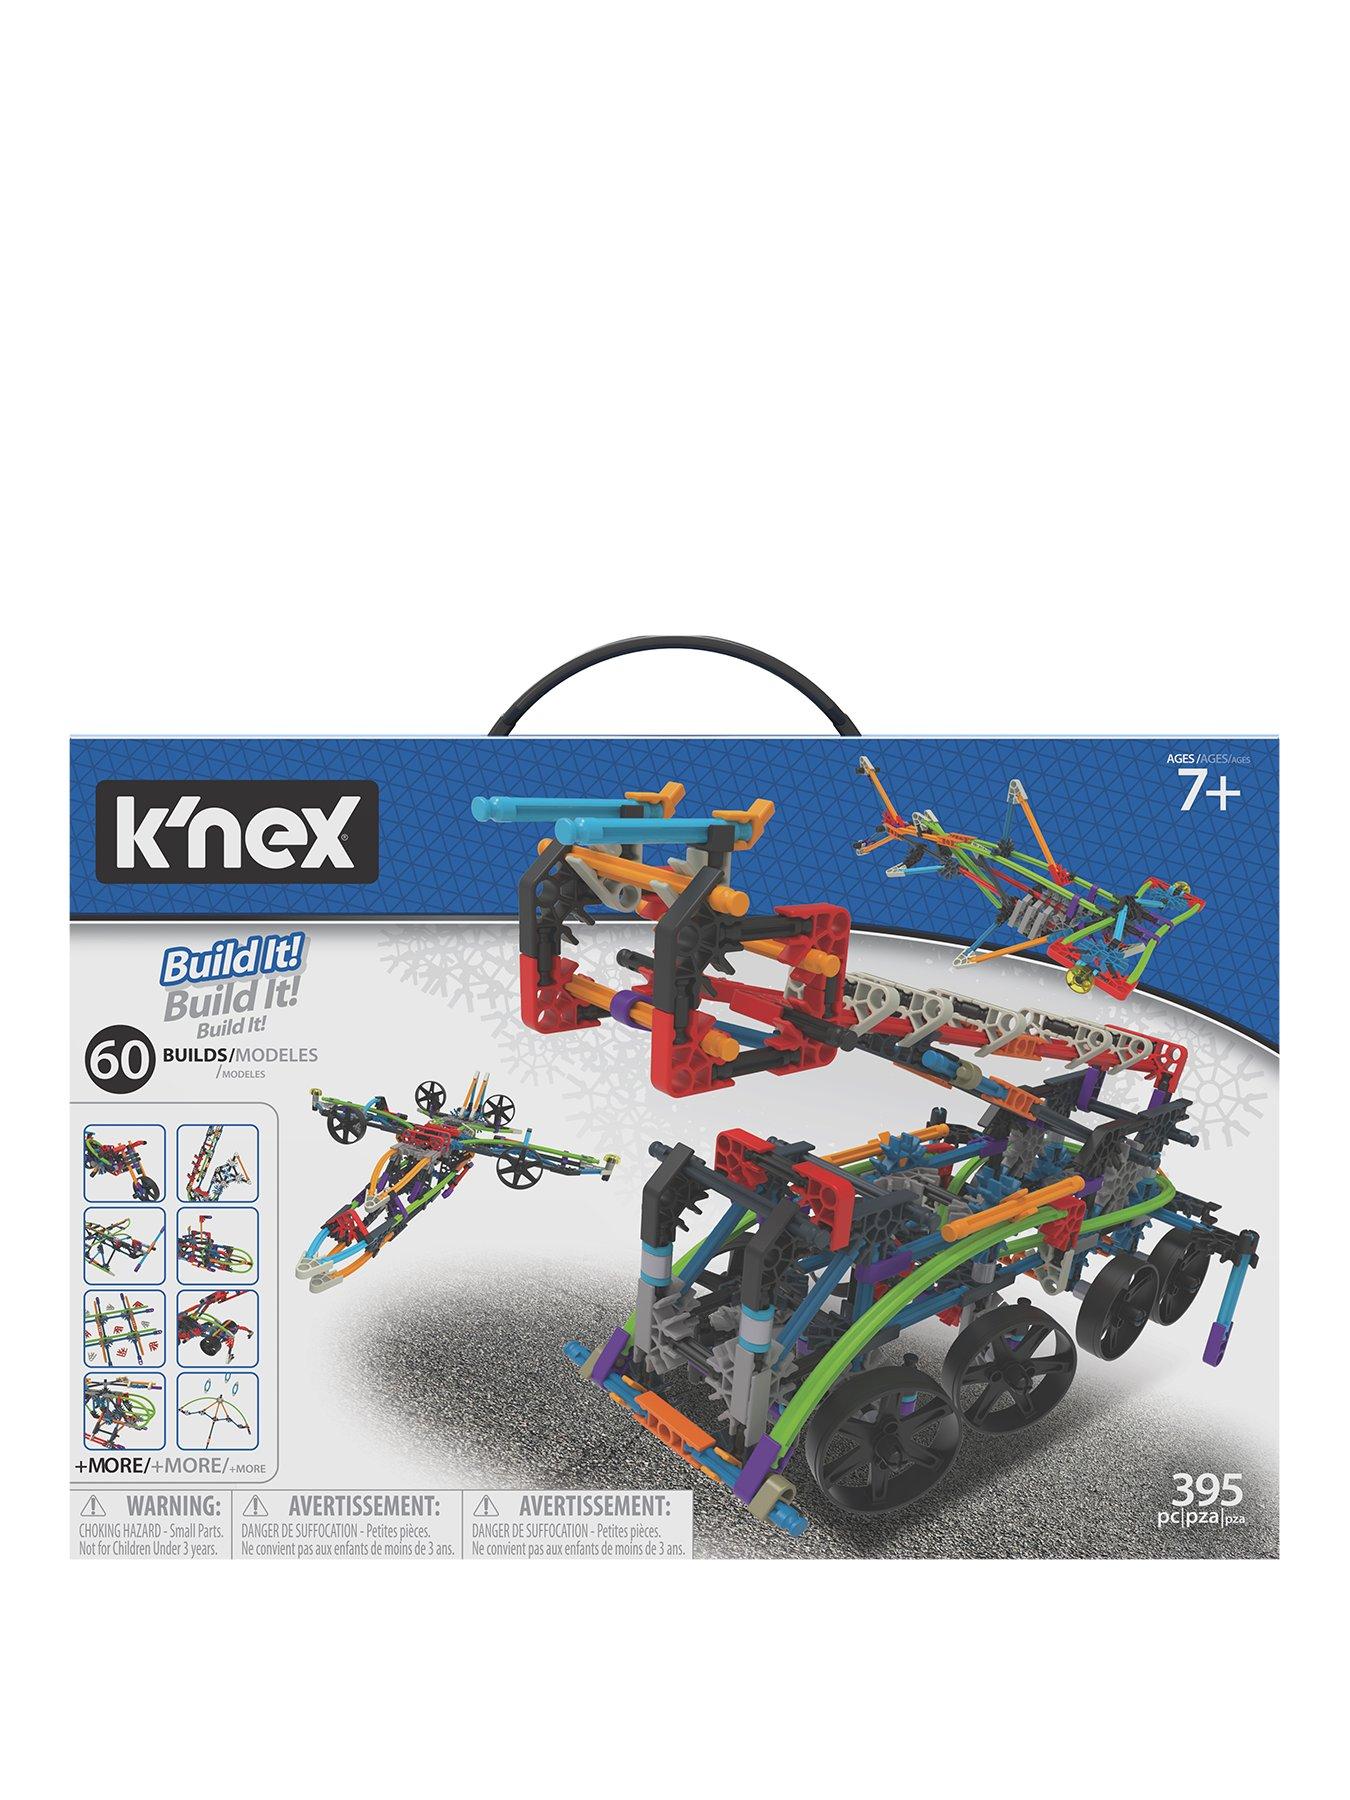 knex 52 model building set